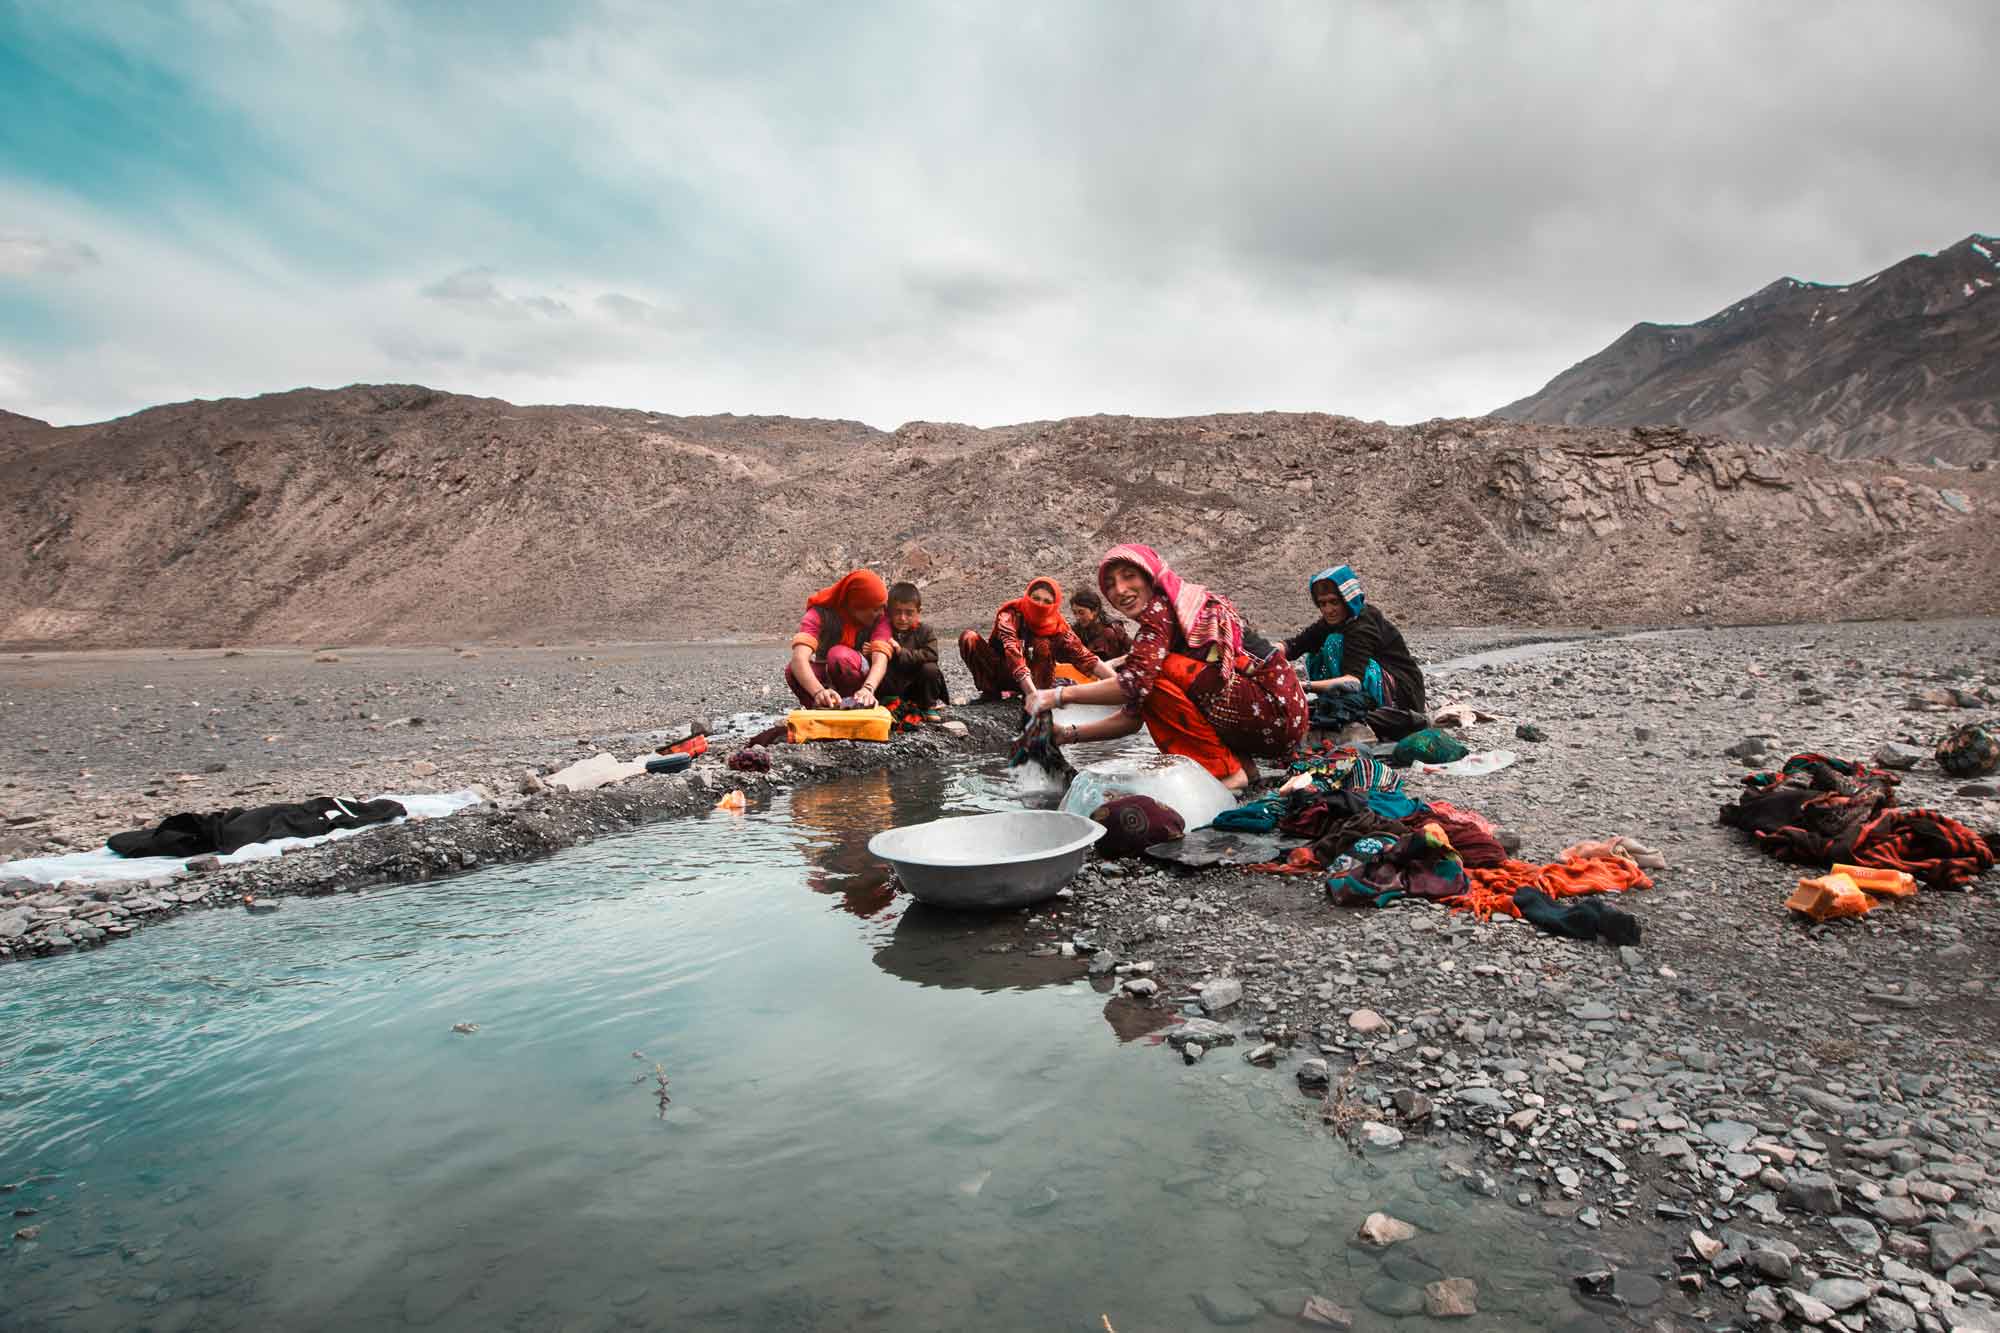 Fotografie di reportage realizzate da Gilberto Maltinti dello studio Parioli Fotografia durante il viaggio in Afghanistan e Tagikistan, nel Corridoio del Whakan.